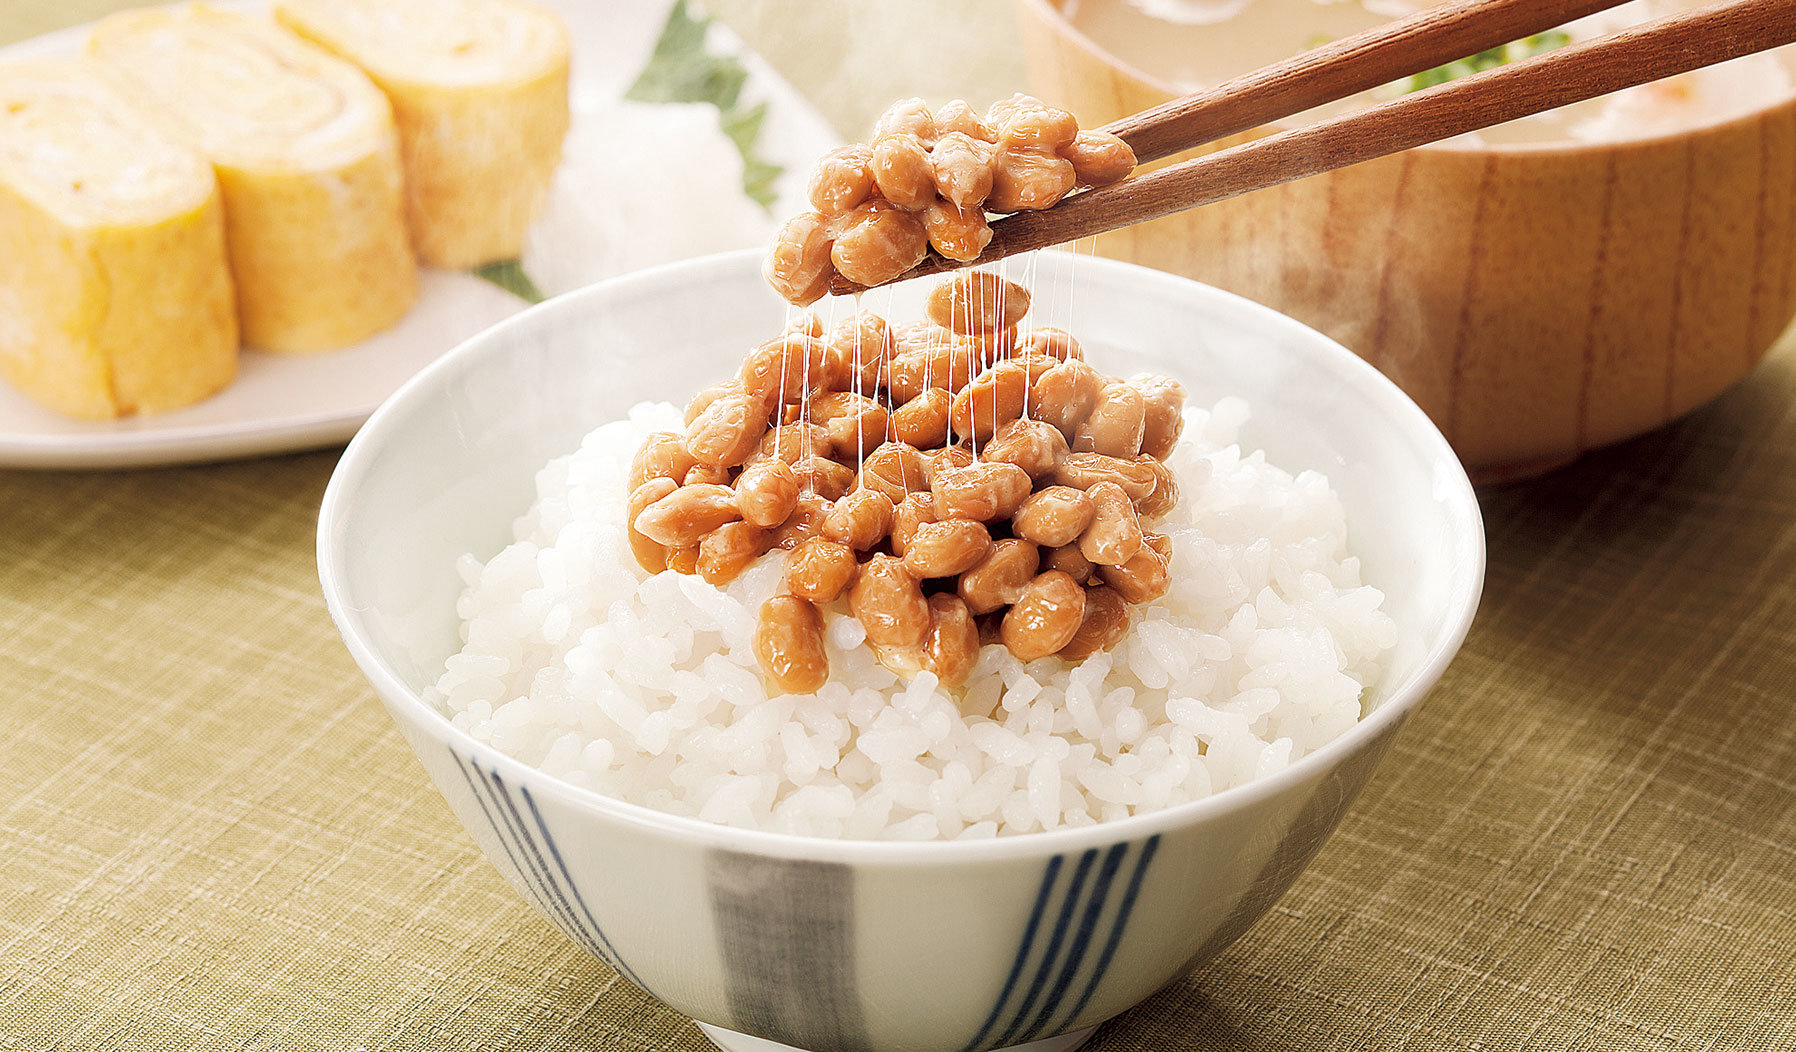 北海道の契約農家で収穫された小粒大豆を使用した納豆です